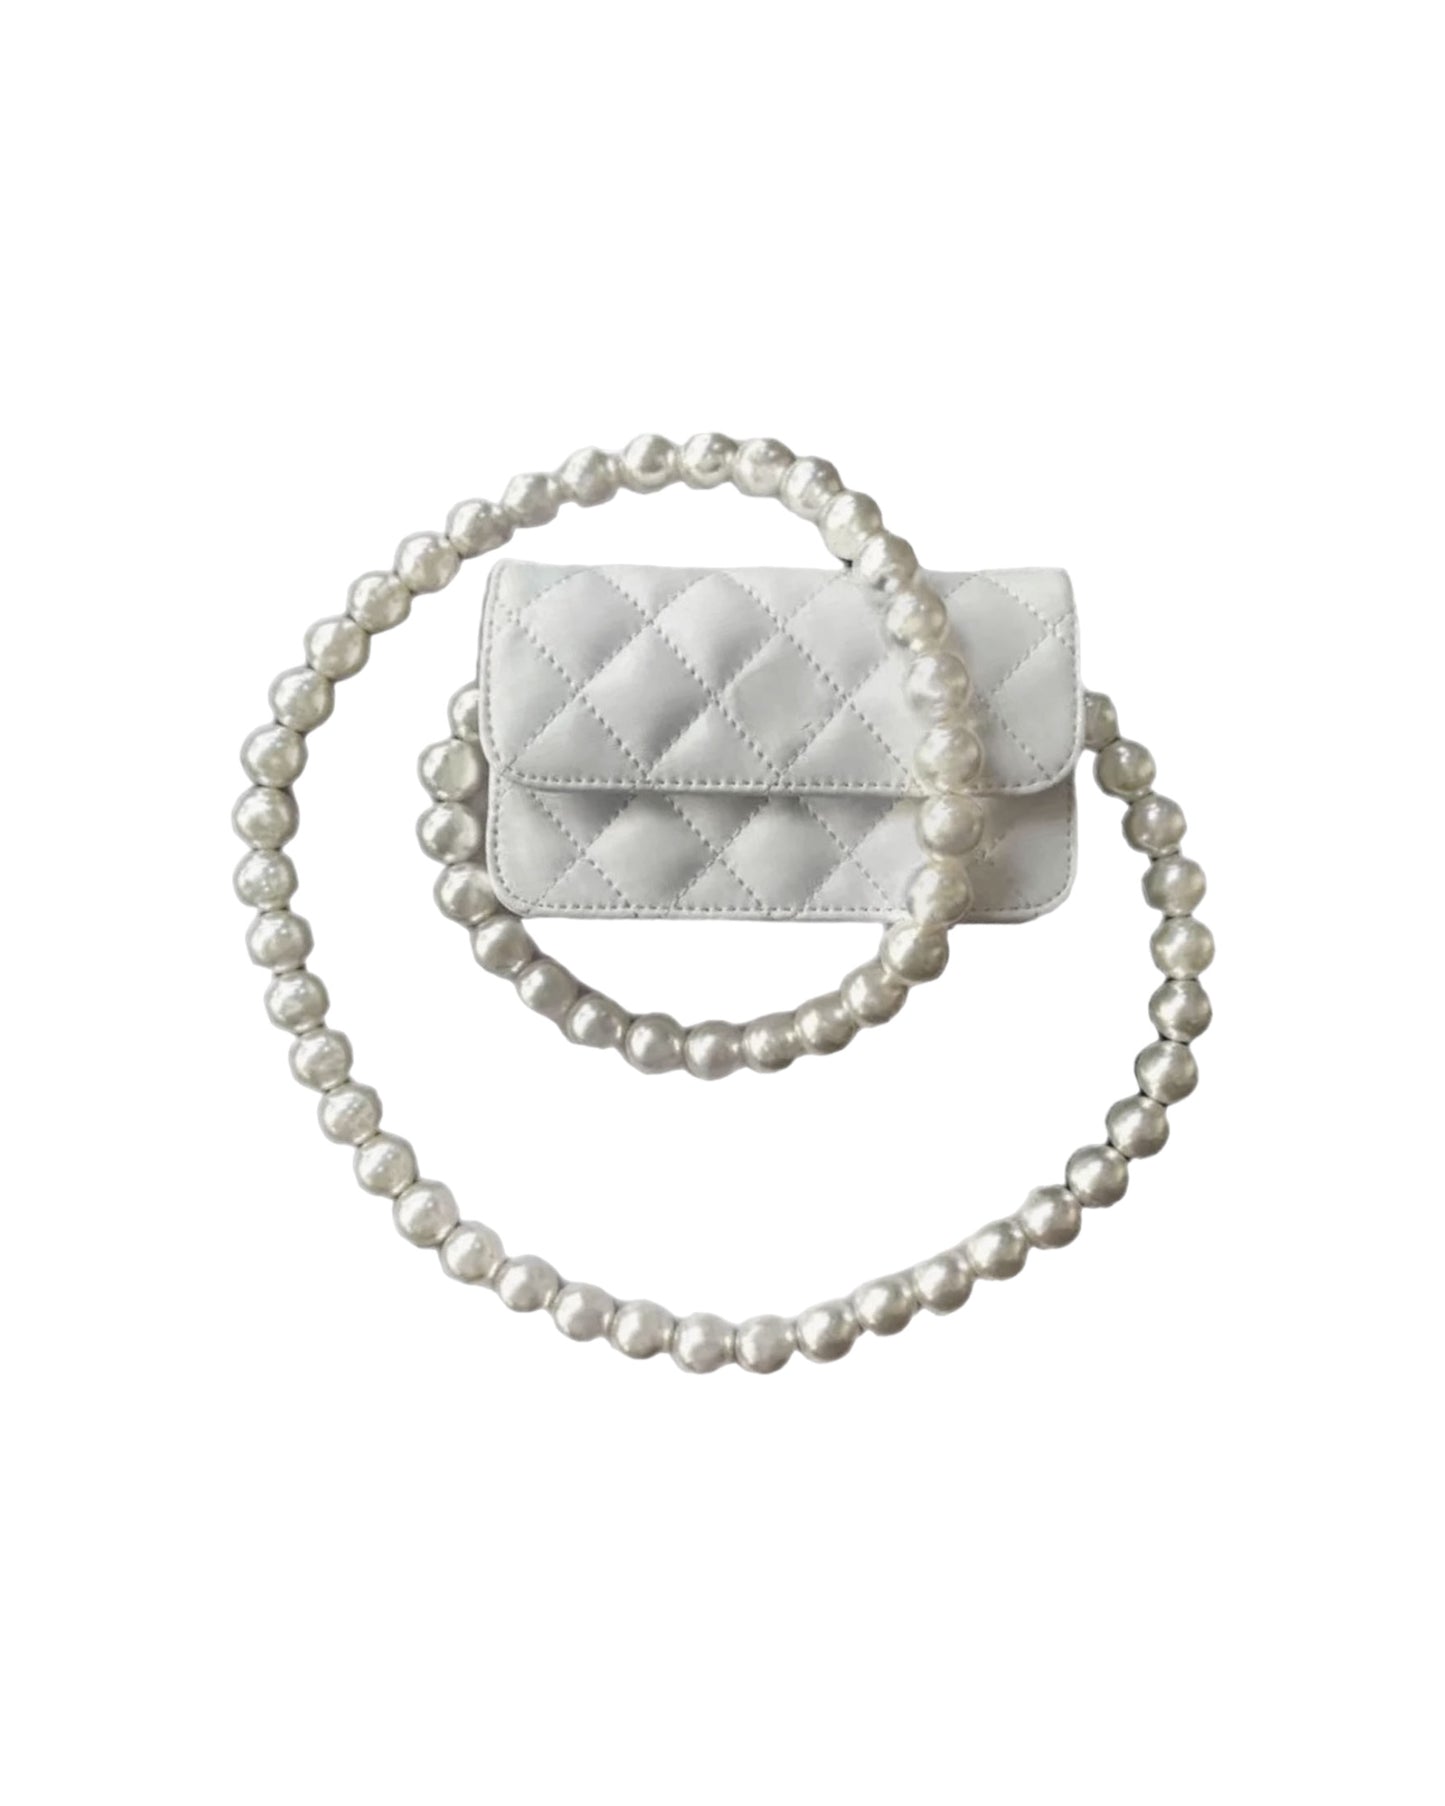 象牙色 PU 皮革絎縫珍珠鏈條包 *預購*